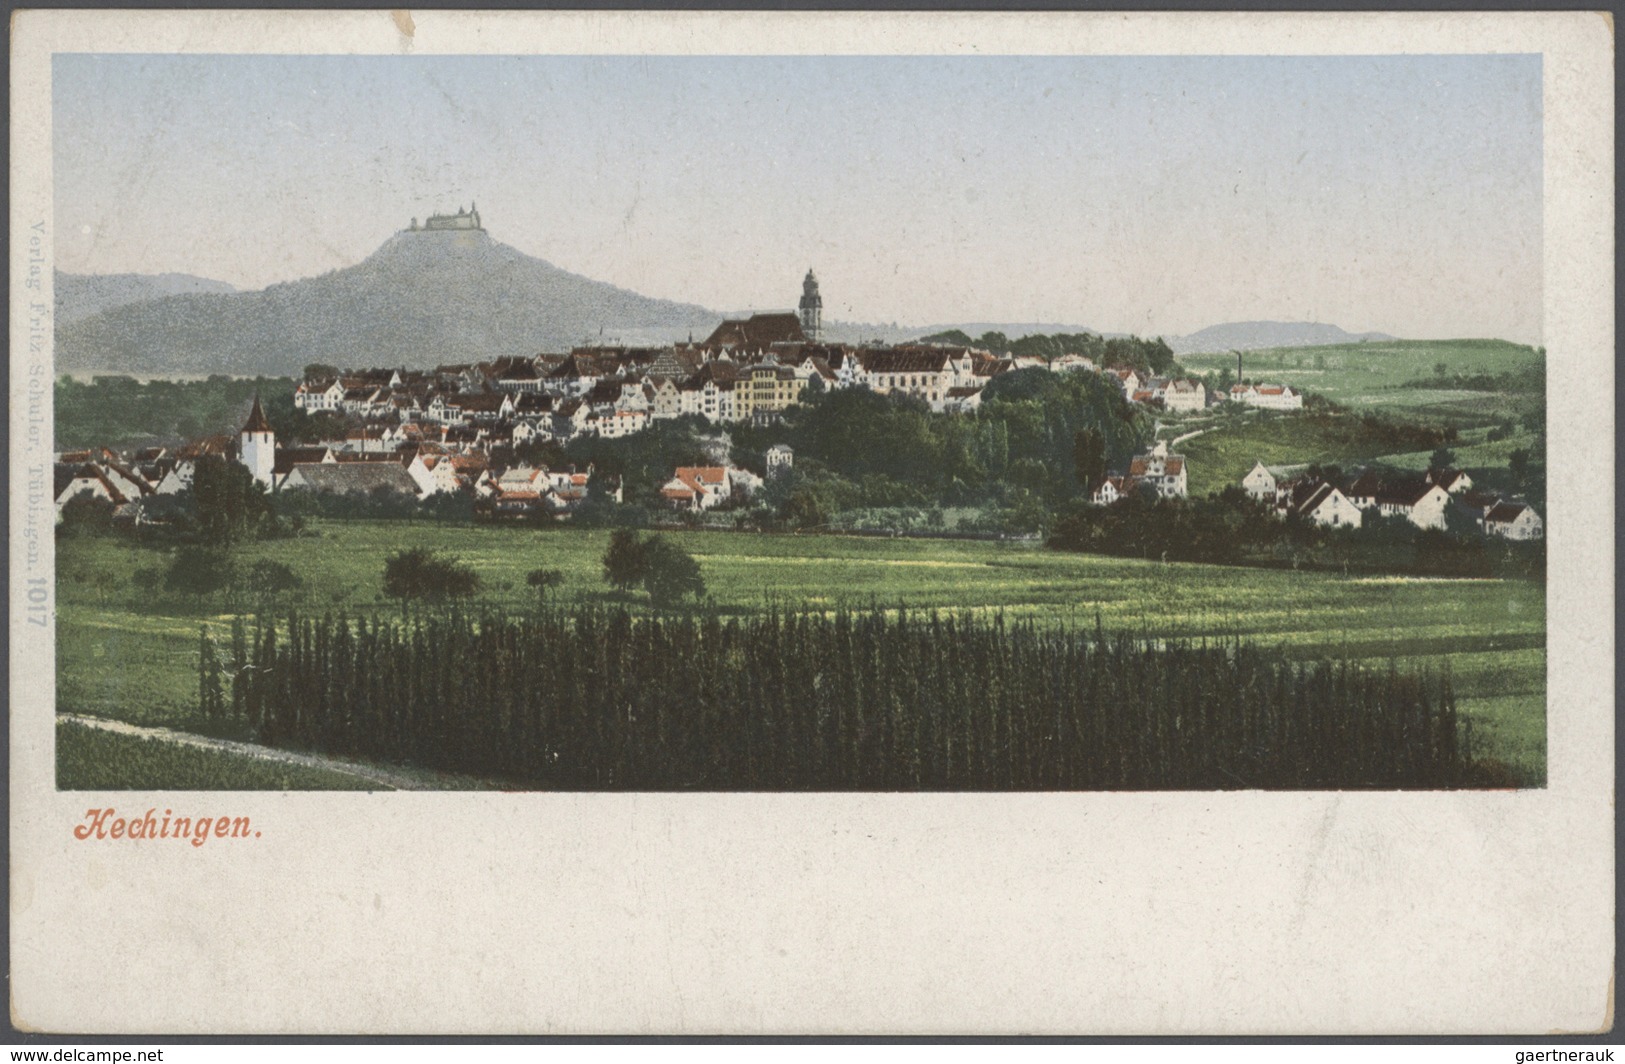 Ansichtskarten: Baden-Württemberg: SCHWÄBISCHE ALB (alte PLZ 742 - 745), Schachtel mit über 850 meis